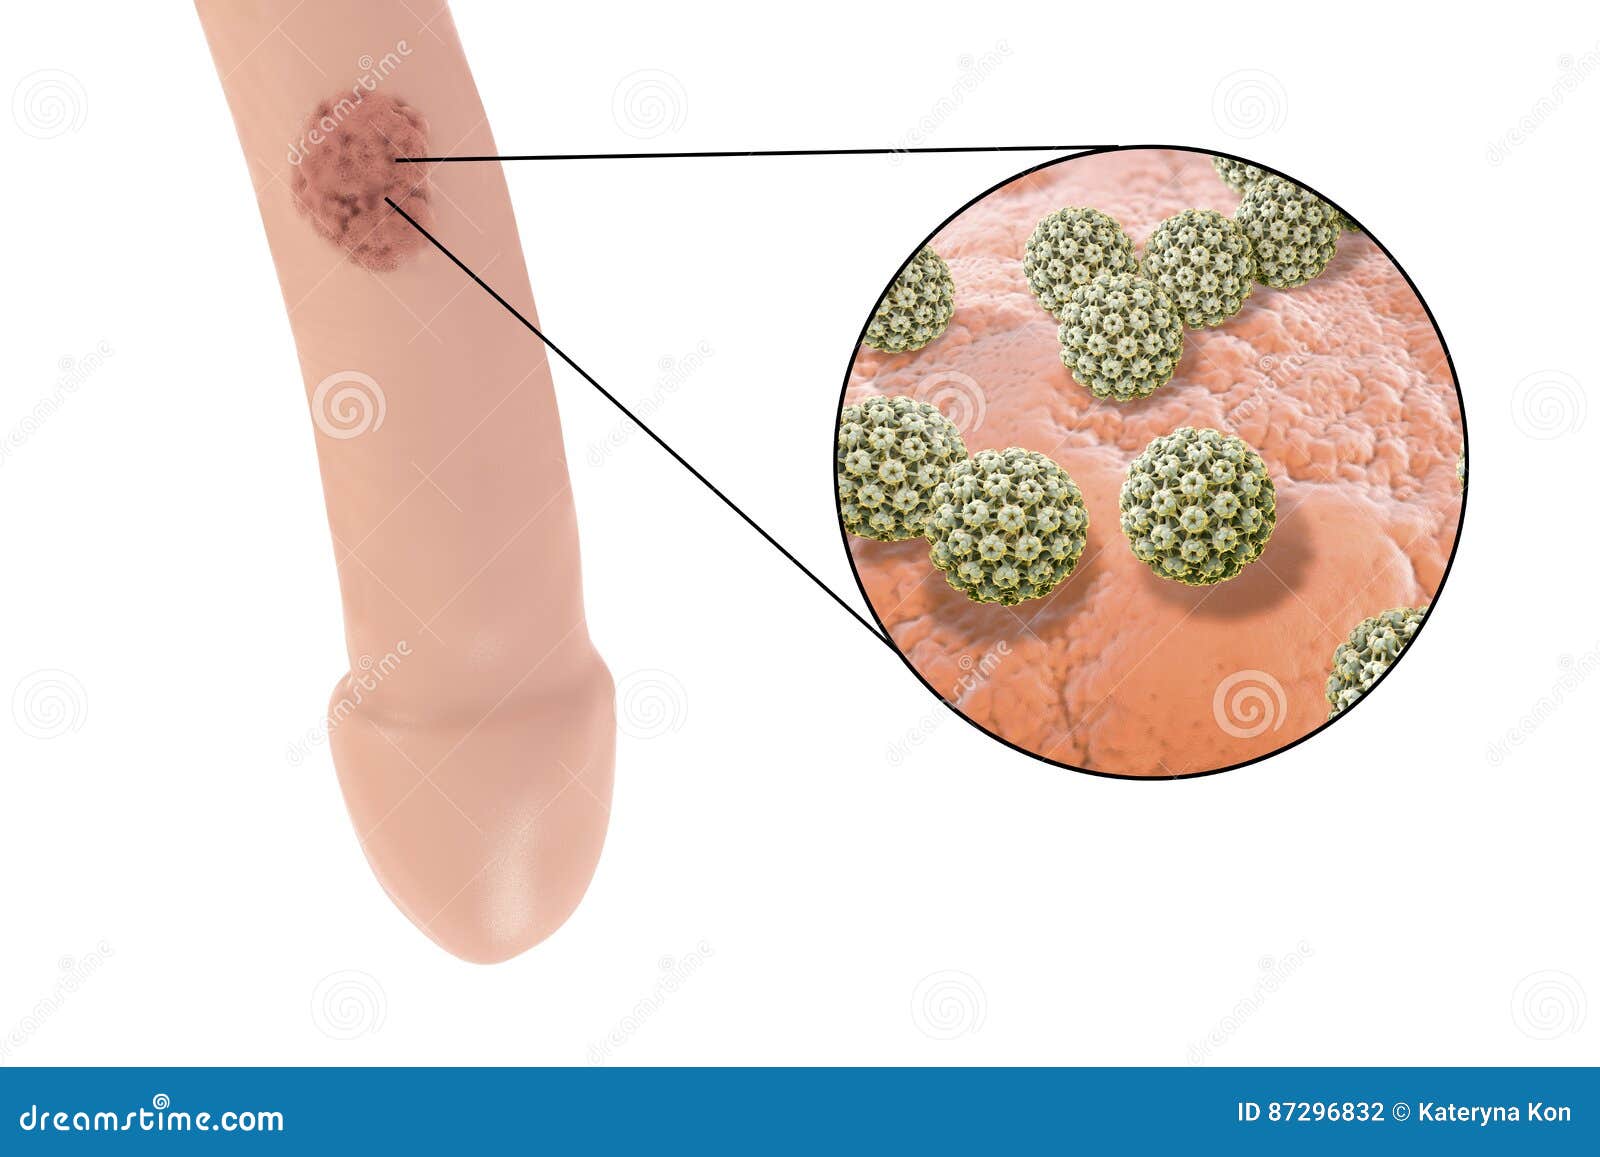 Human papilloma virus in male. Hpv virus treatment